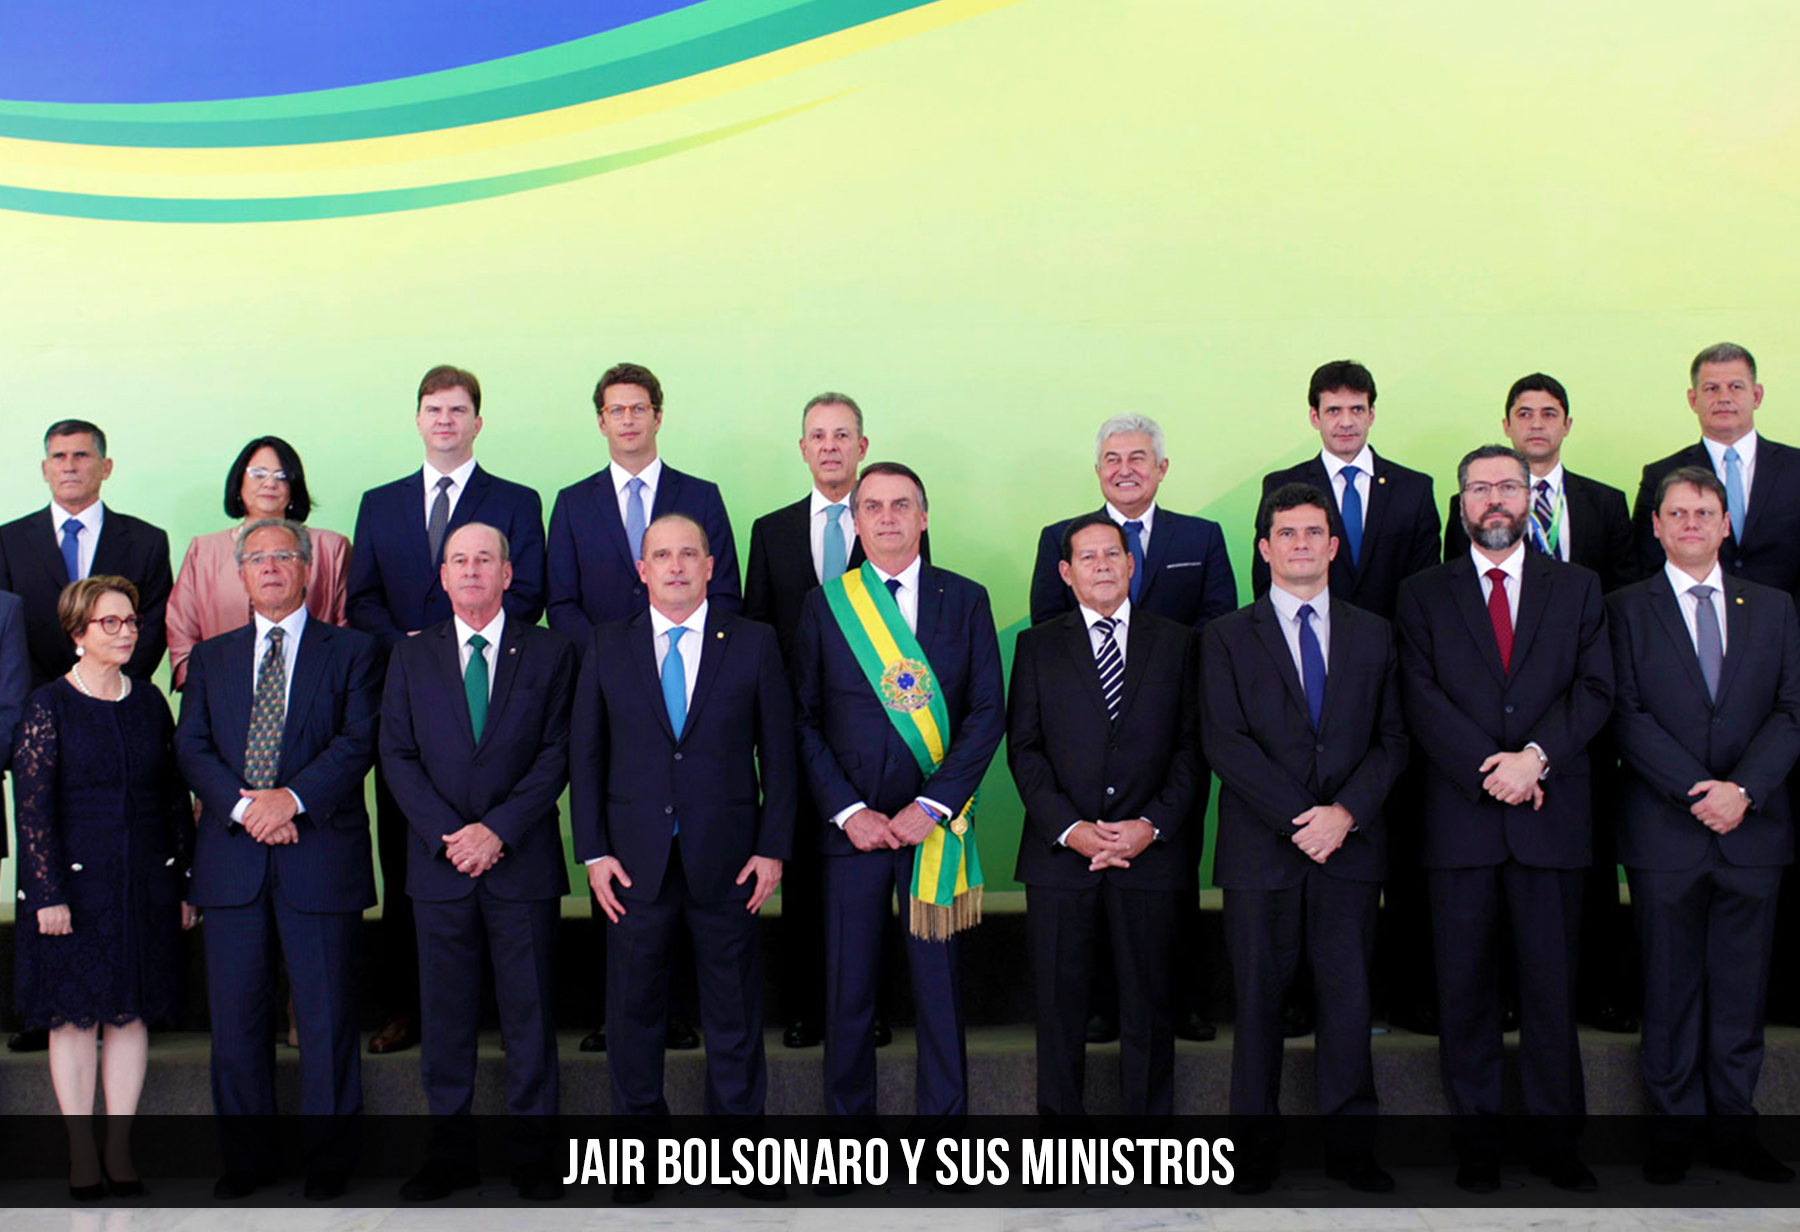 Jair Bolsonaro y sus ministros